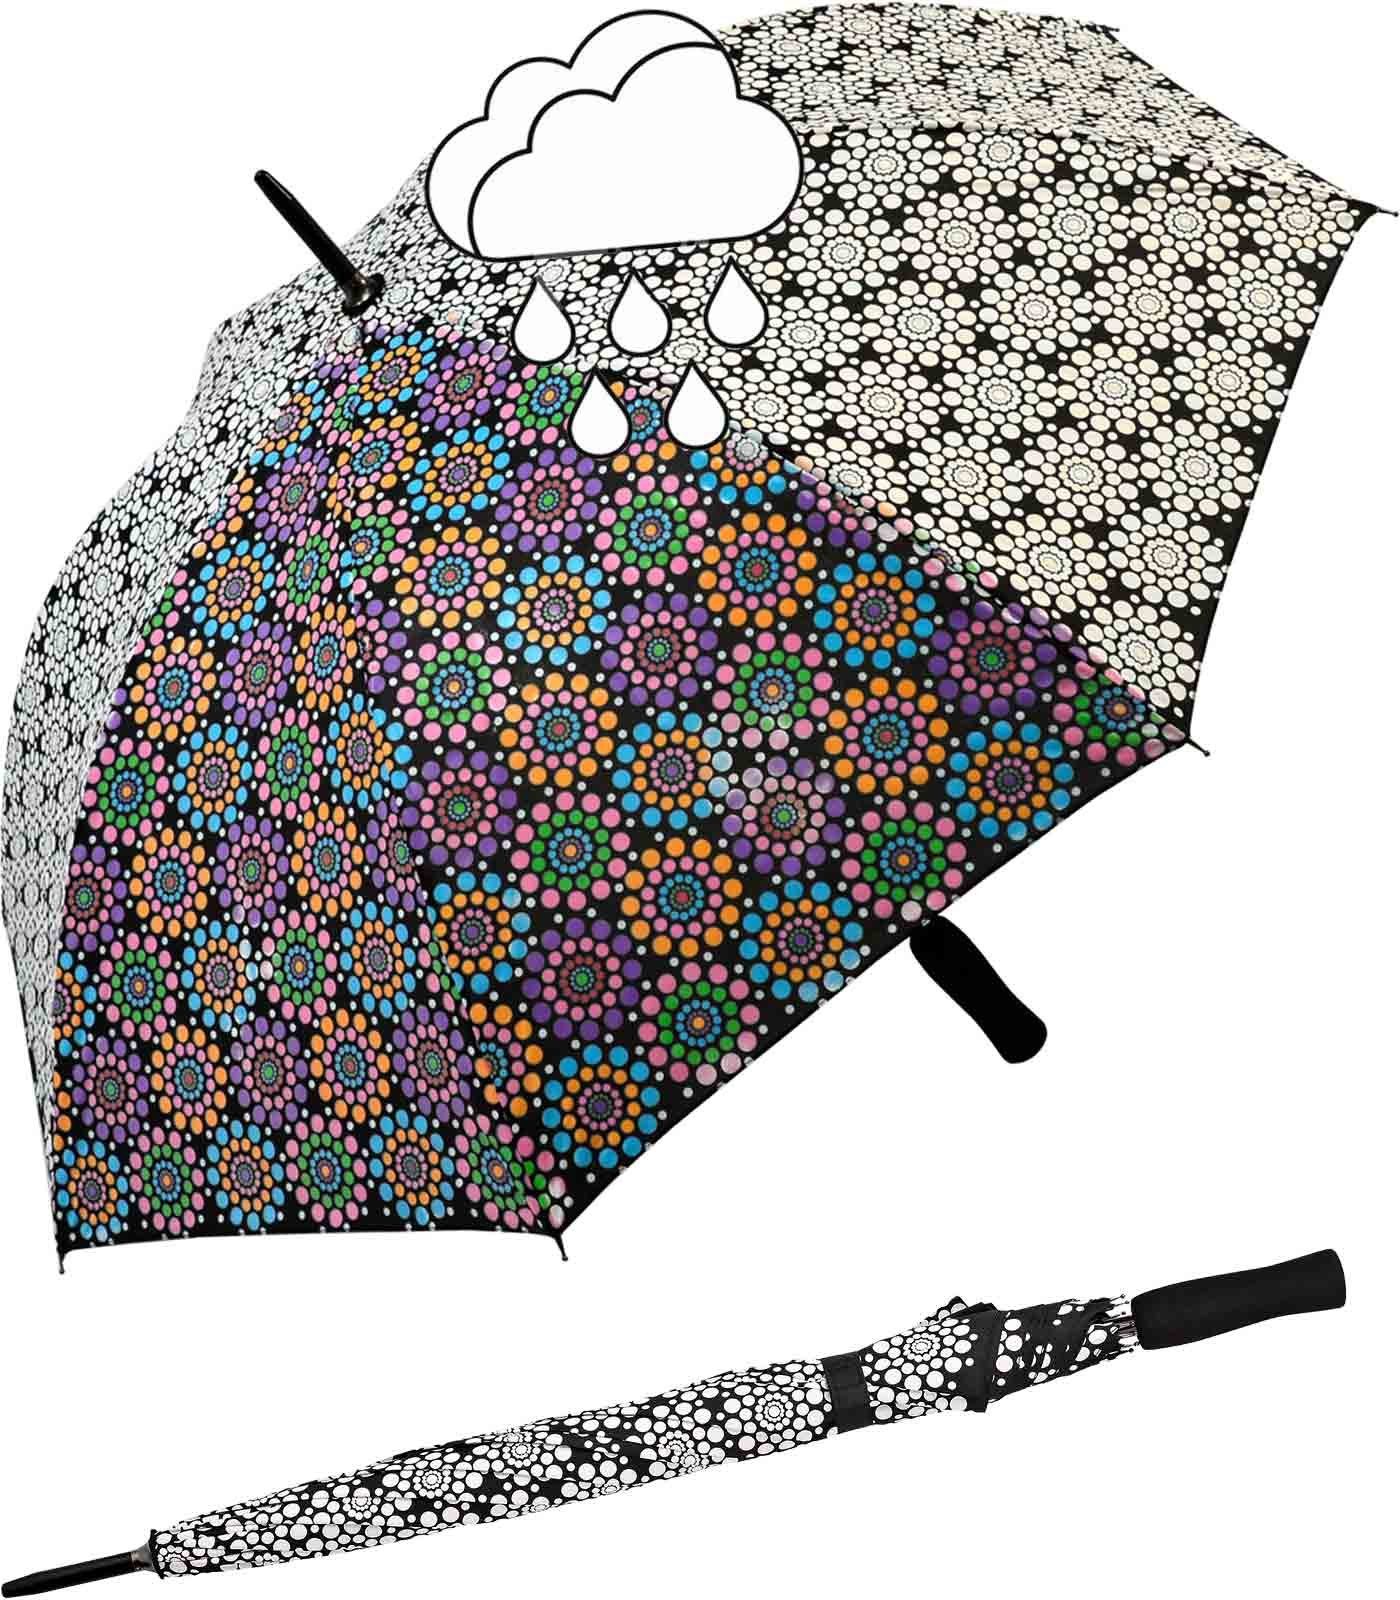 - Schirm wird zeigt nass Wetprint Nässe er wahres Gesicht der Langregenschirm sein bei Blumen, Impliva Farbwechsel wenn